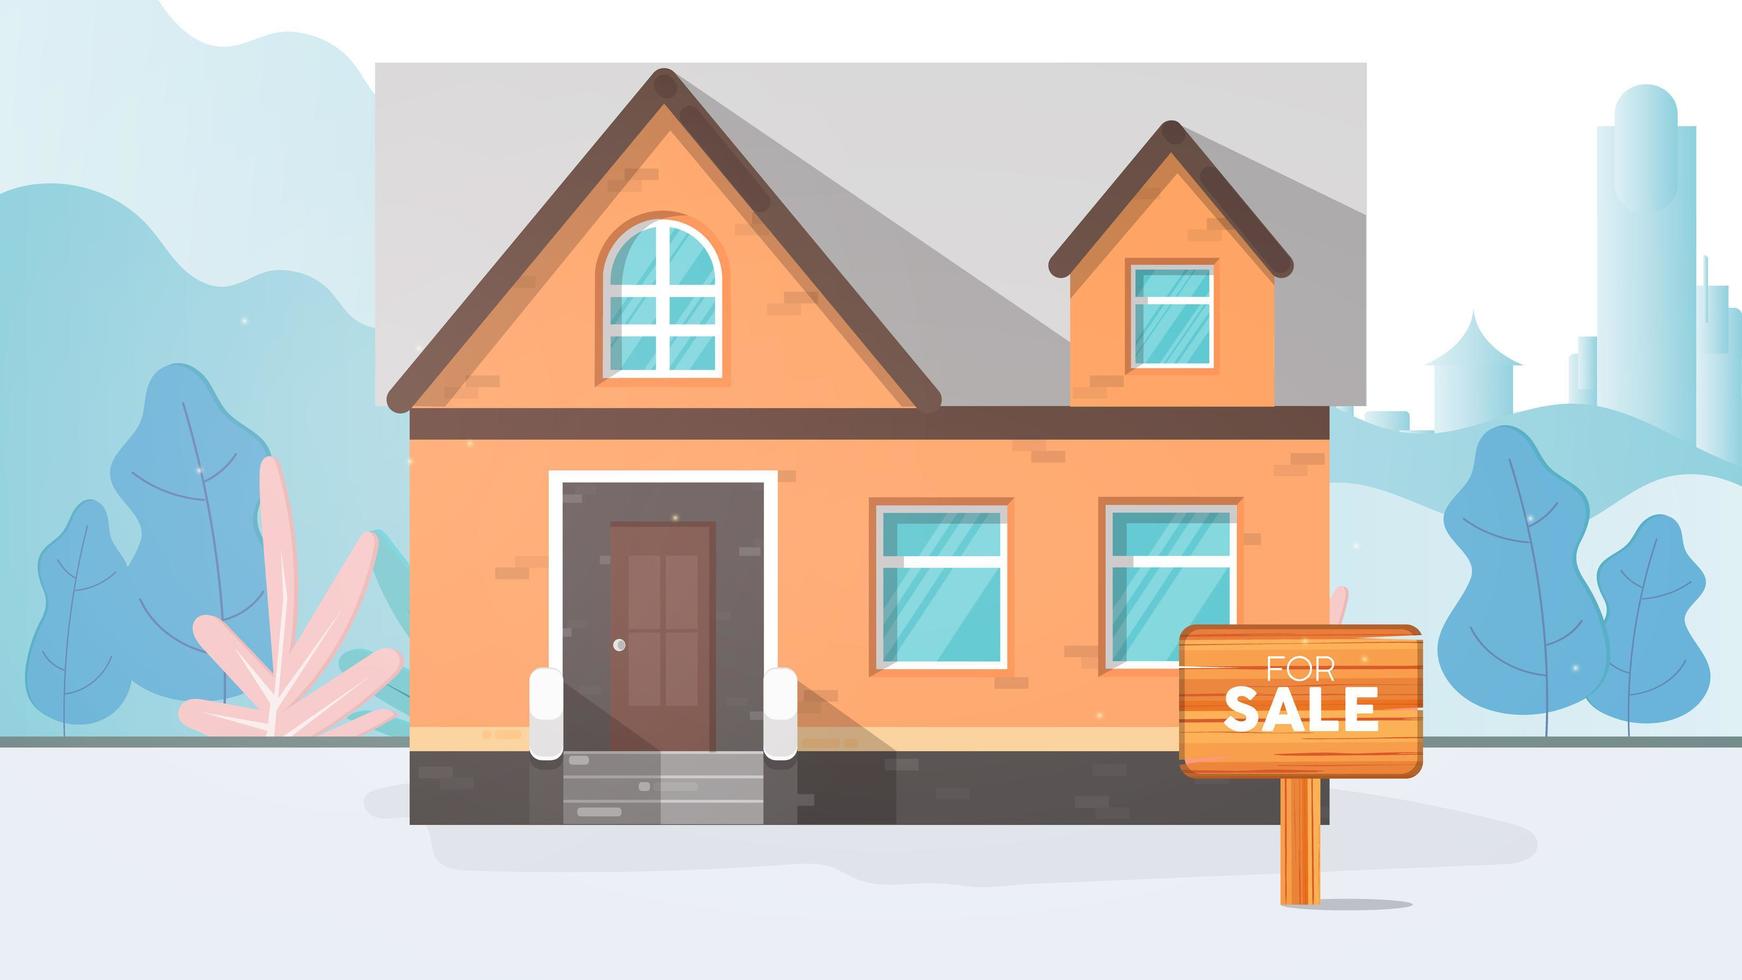 maison à vendre. à vendre signe. concept de vente de maison et d'immobilier. vecteur